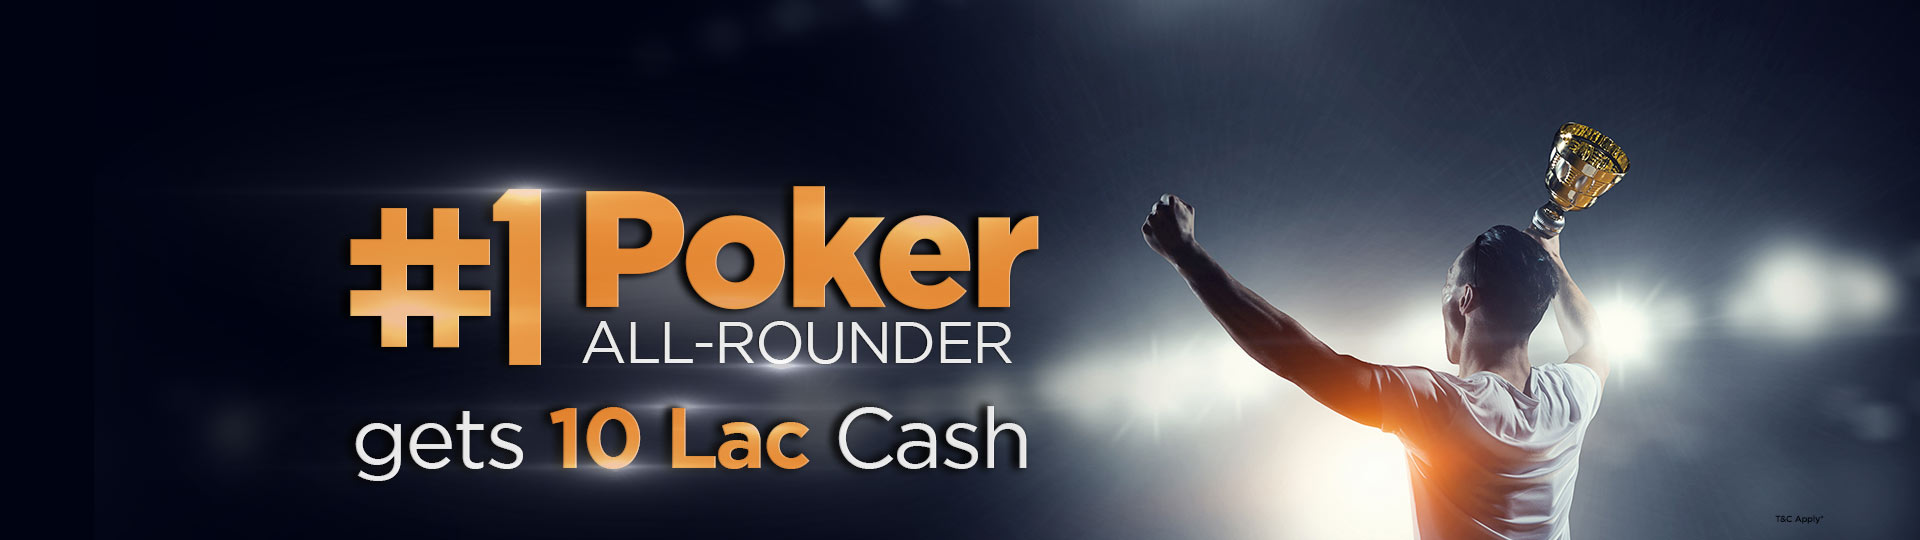 Online Poker All-Rounder